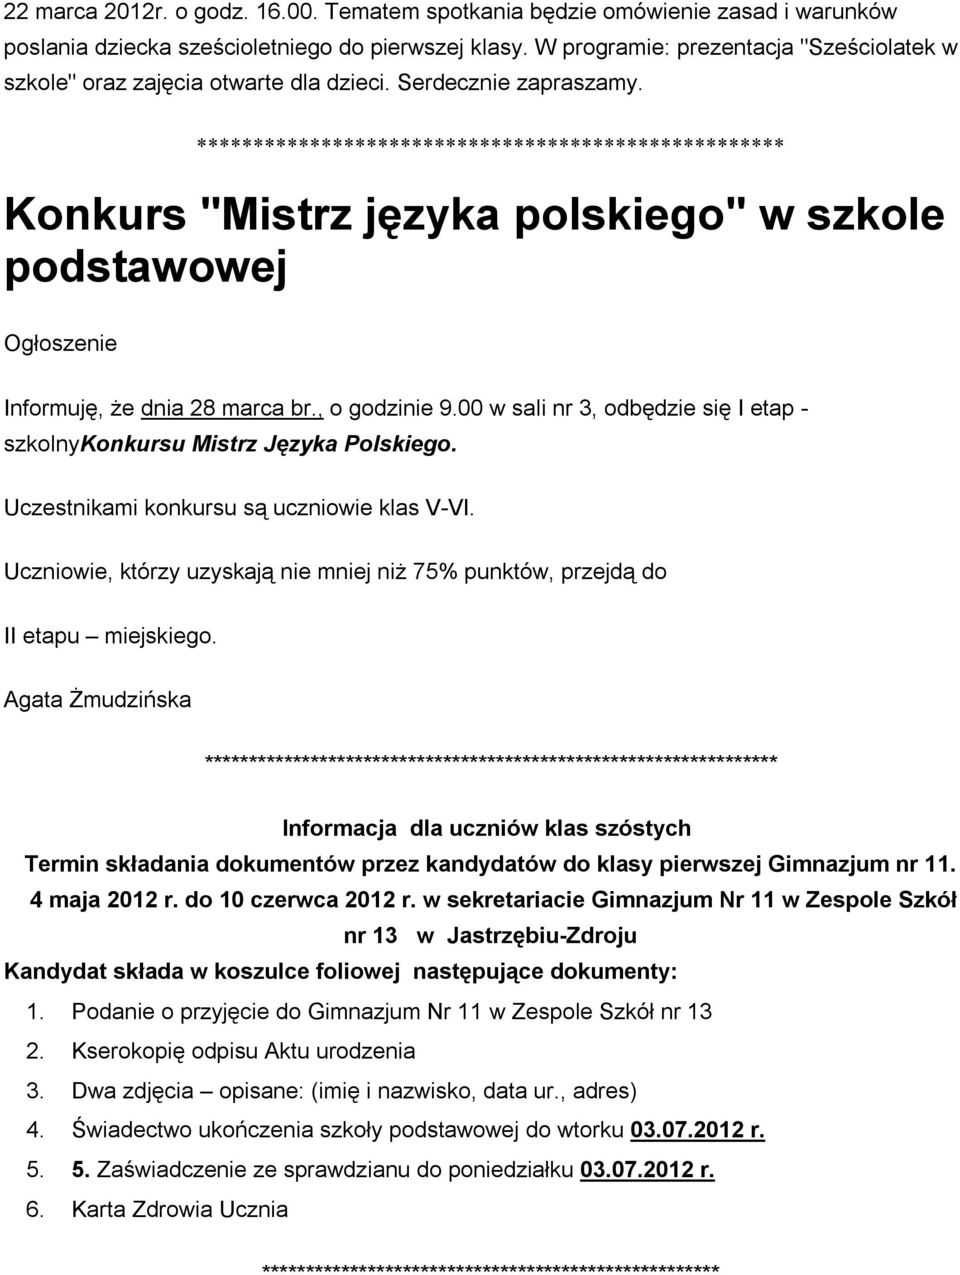 Konkurs "Mistrz języka polskiego" w szkole podstawowej Ogłoszenie Informuję, że dnia 28 marca br., o godzinie 9.00 w sali nr 3, odbędzie się I etap - szkolnykonkursu Mistrz Języka Polskiego.